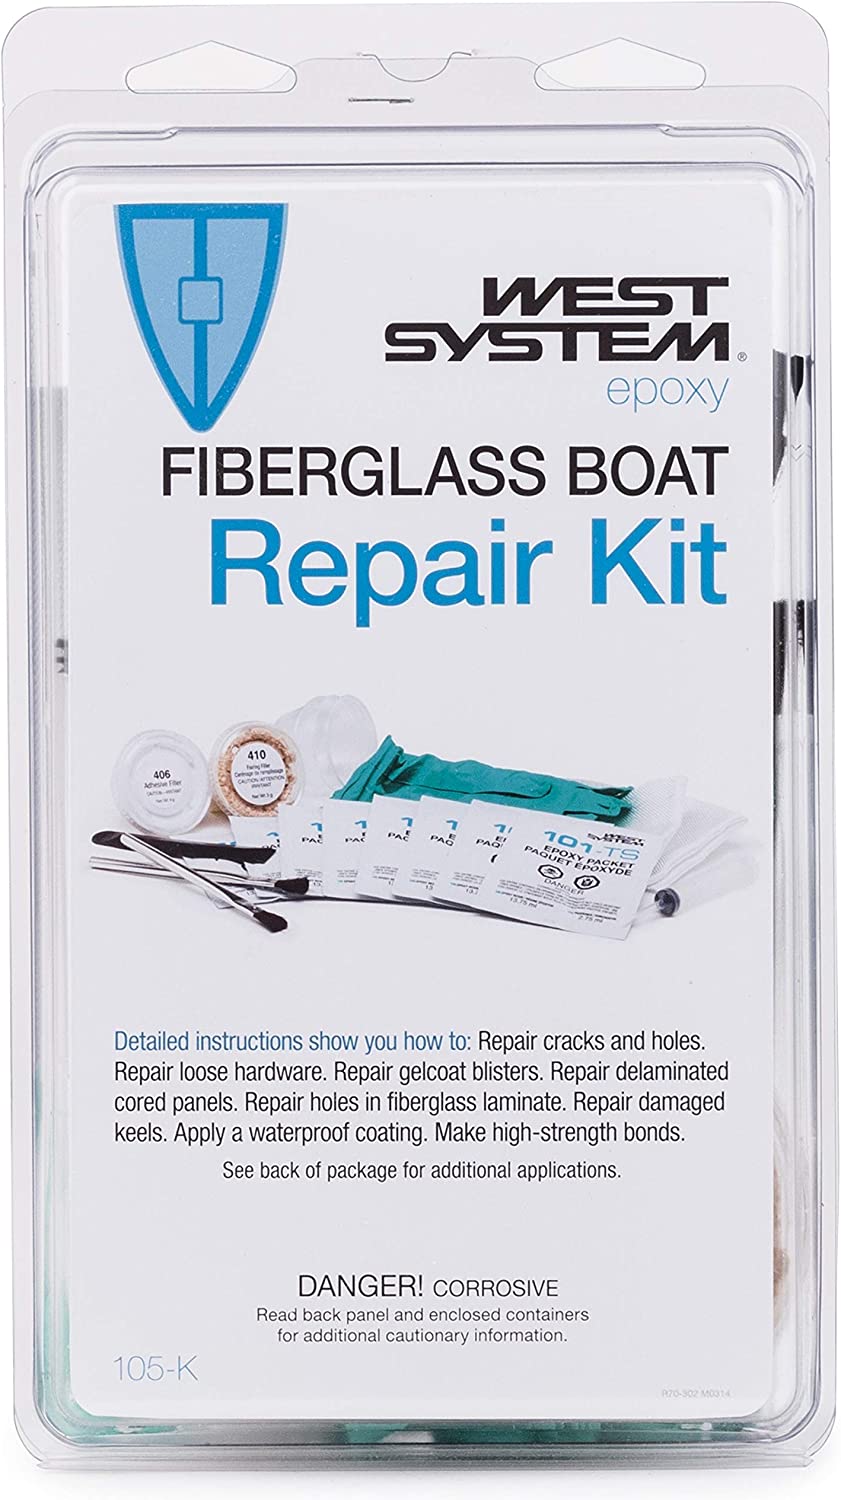 West System 105-K; Fiberglass Boat Repair Kit